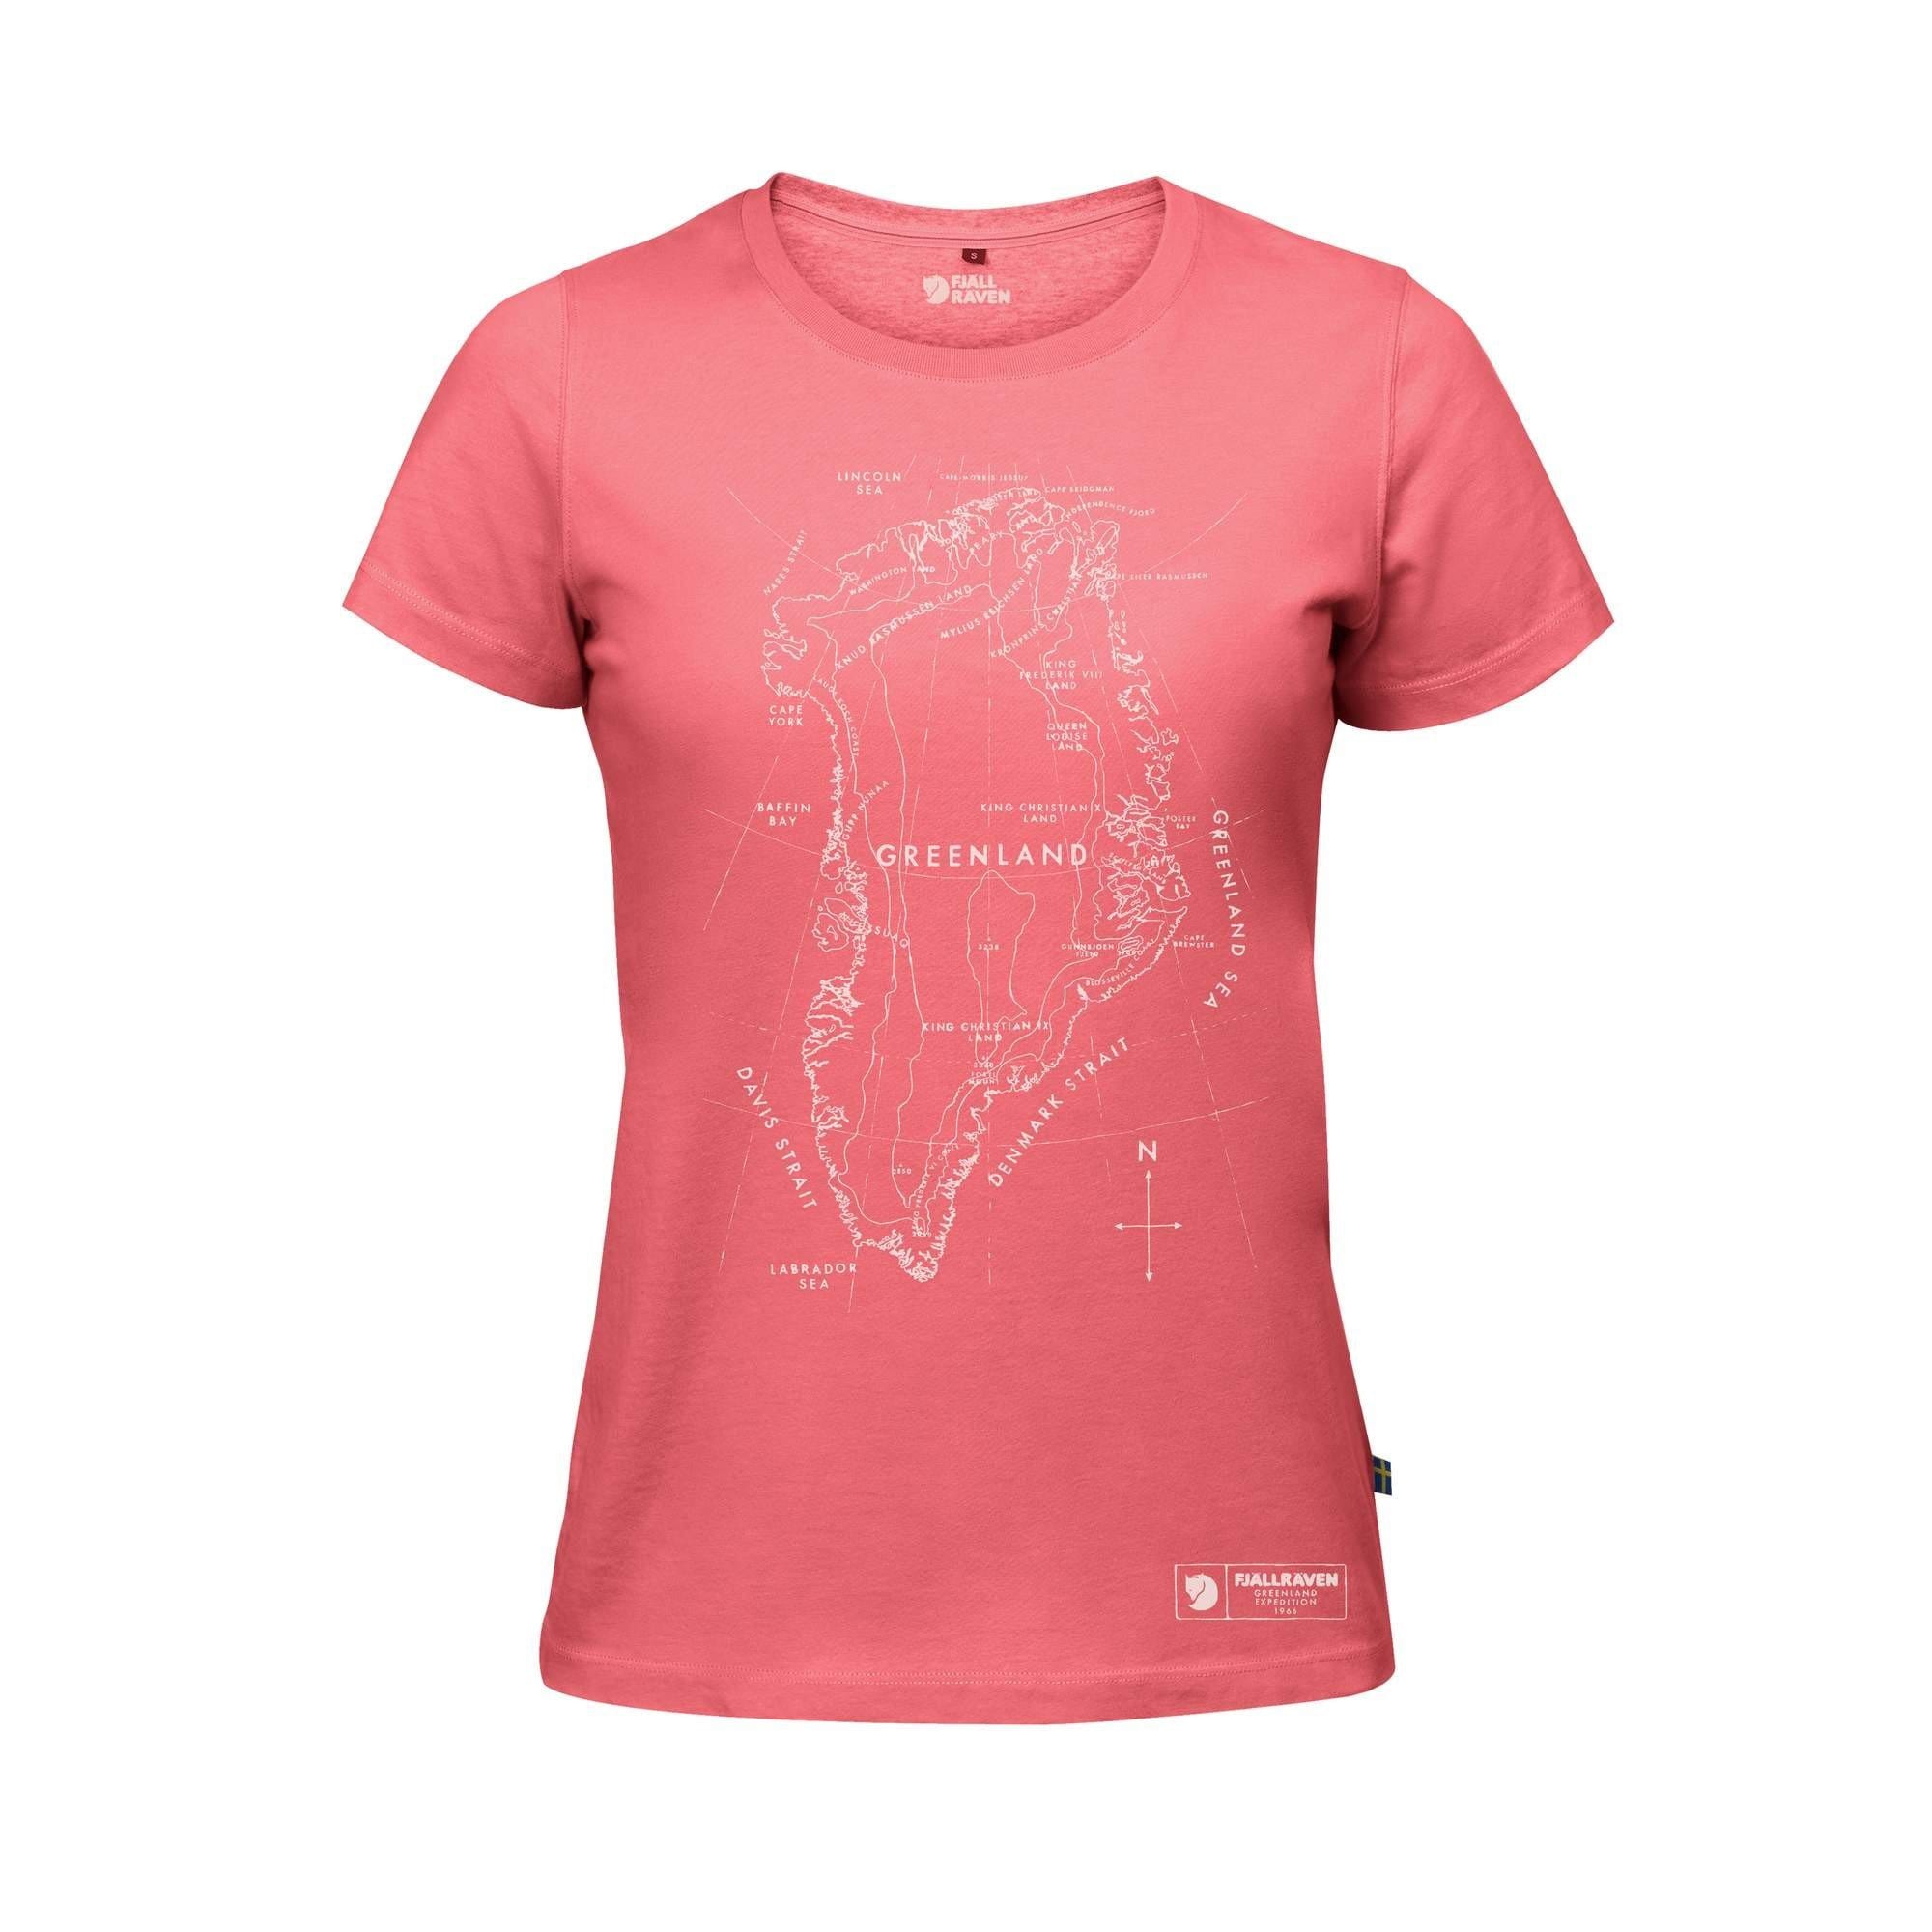 Fjällräven T-Shirt L / Peach Pink Fjällräven Greenland Printed T-Shirt